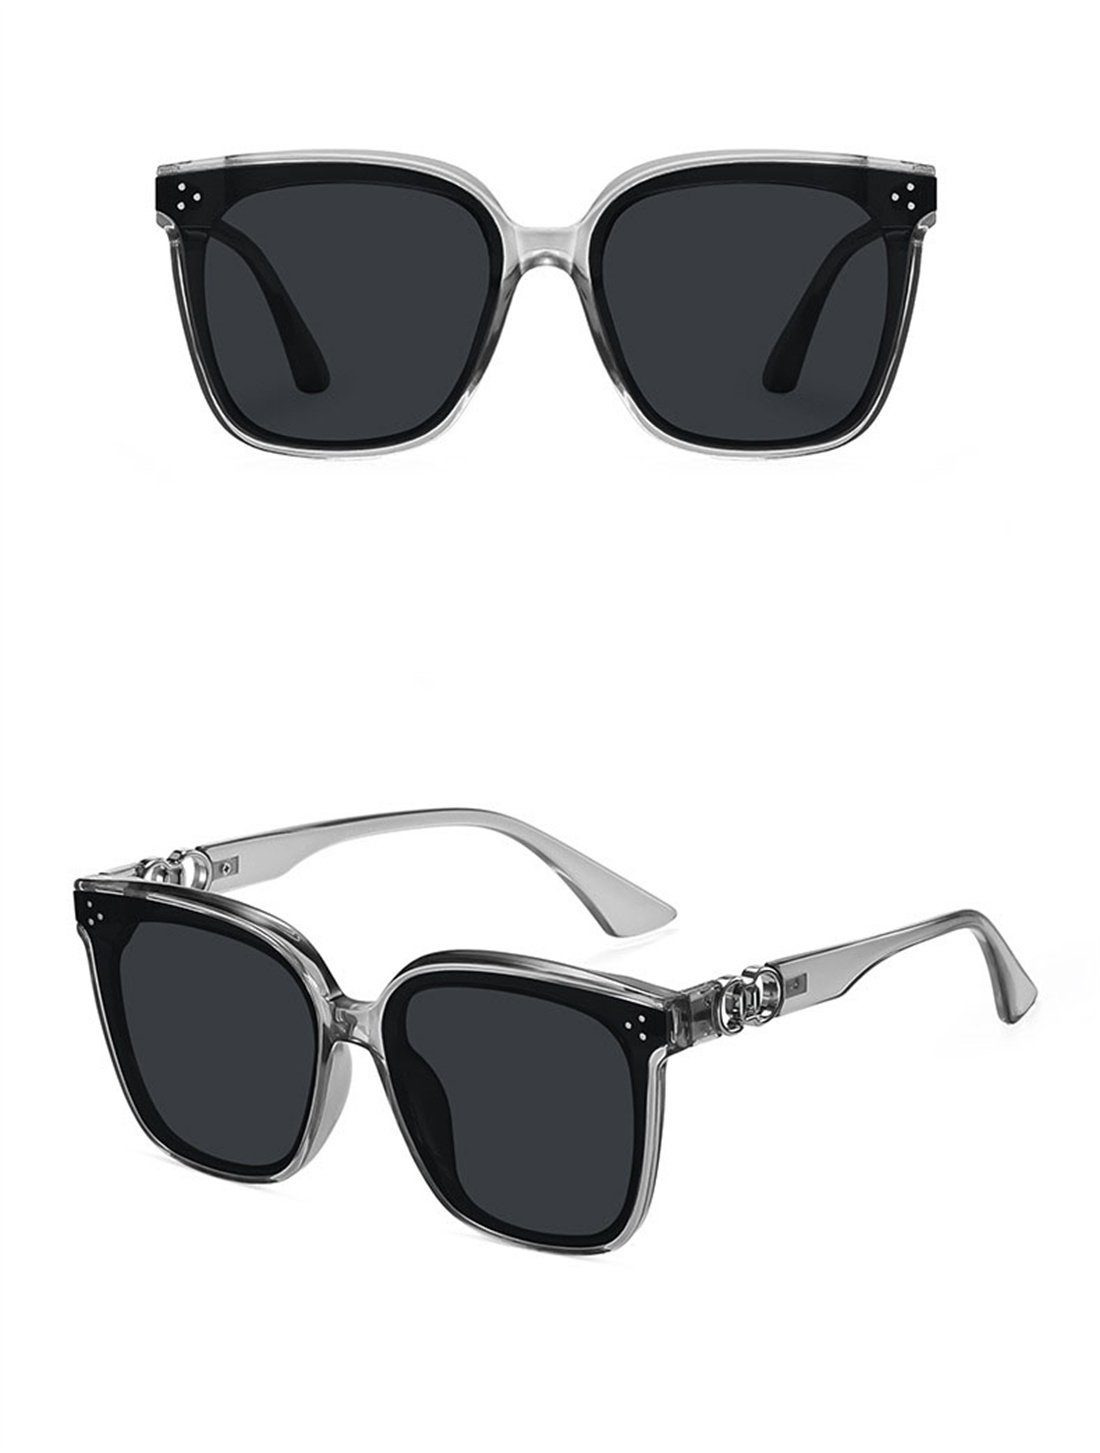 DÖRÖY Sonnenbrille Outdoor-Sonnenbrillen Mode-Sonnenbrillen für Männer Frauen, und